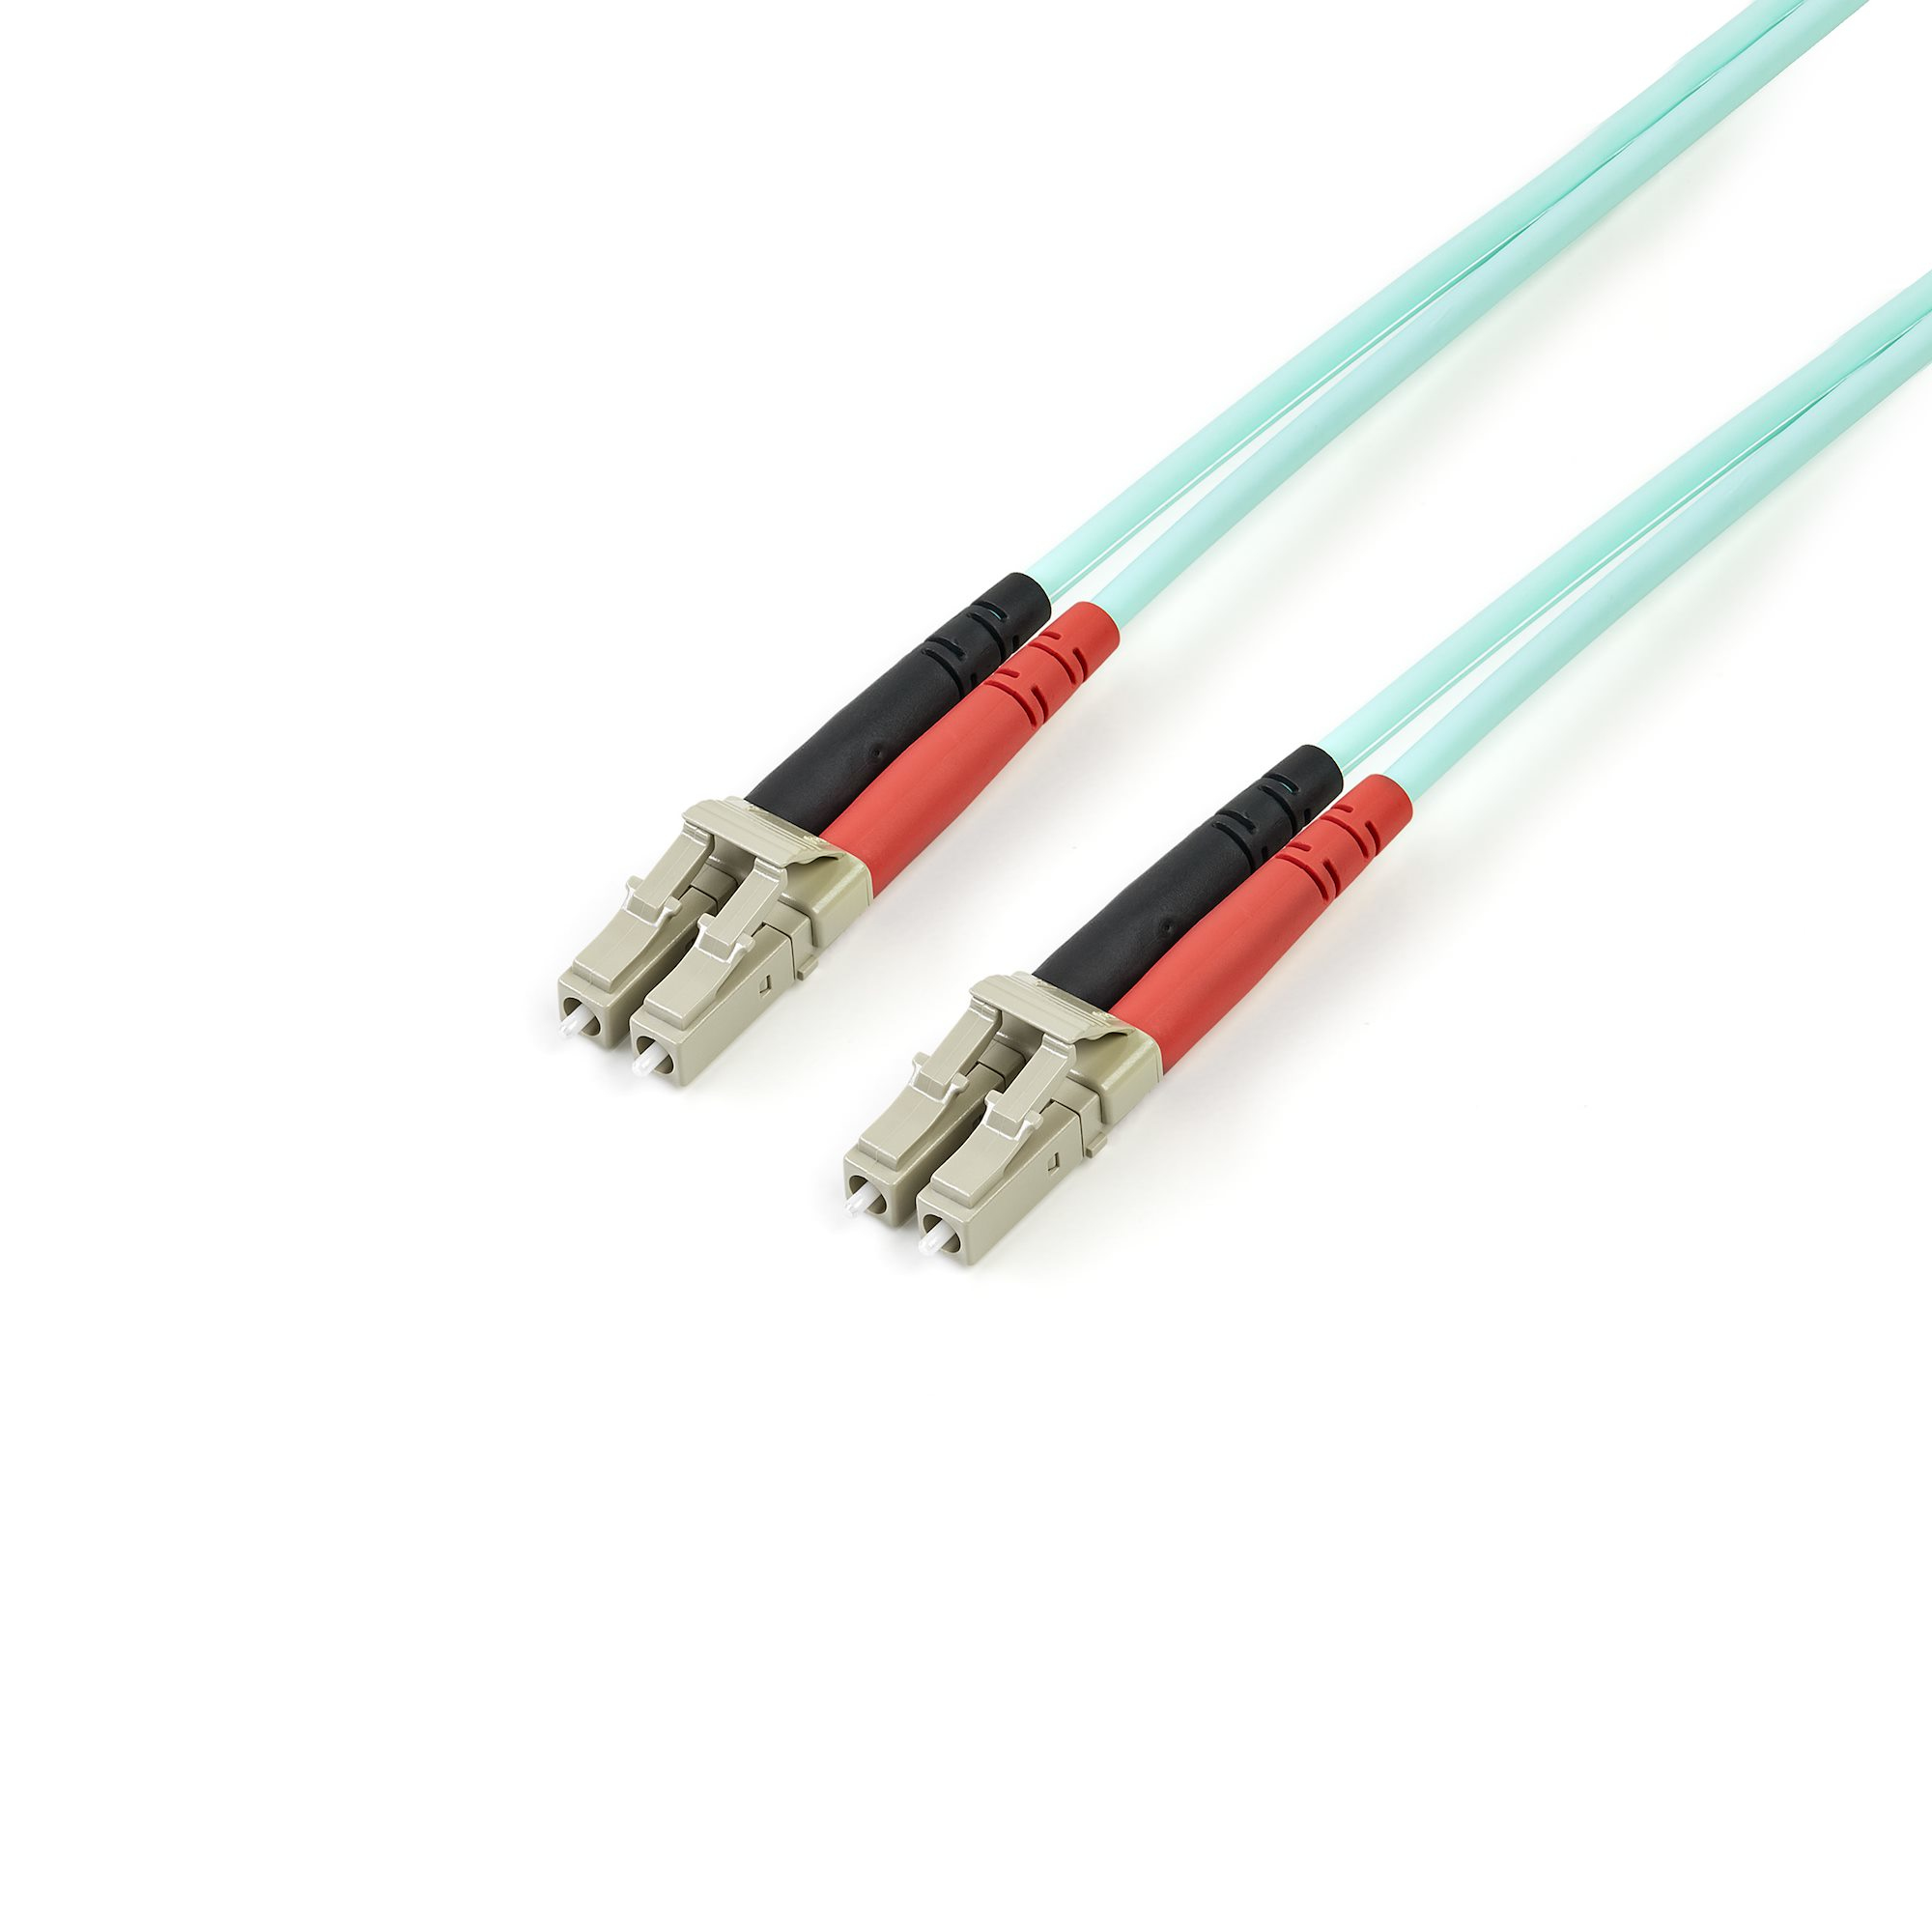 StarTech.com Fiber Optic Cable - 10 Gb Aqua - Multimode Duplex 50/125 - LSZH - LC/LC - 3 m~3m (10ft) LC/UPC to LC/UPC OM3 Multimode Fiber Optic Cable, Full Duplex 50/125µm Zipcord Fiber, 100G Networks, LOMMF/VCSEL, 